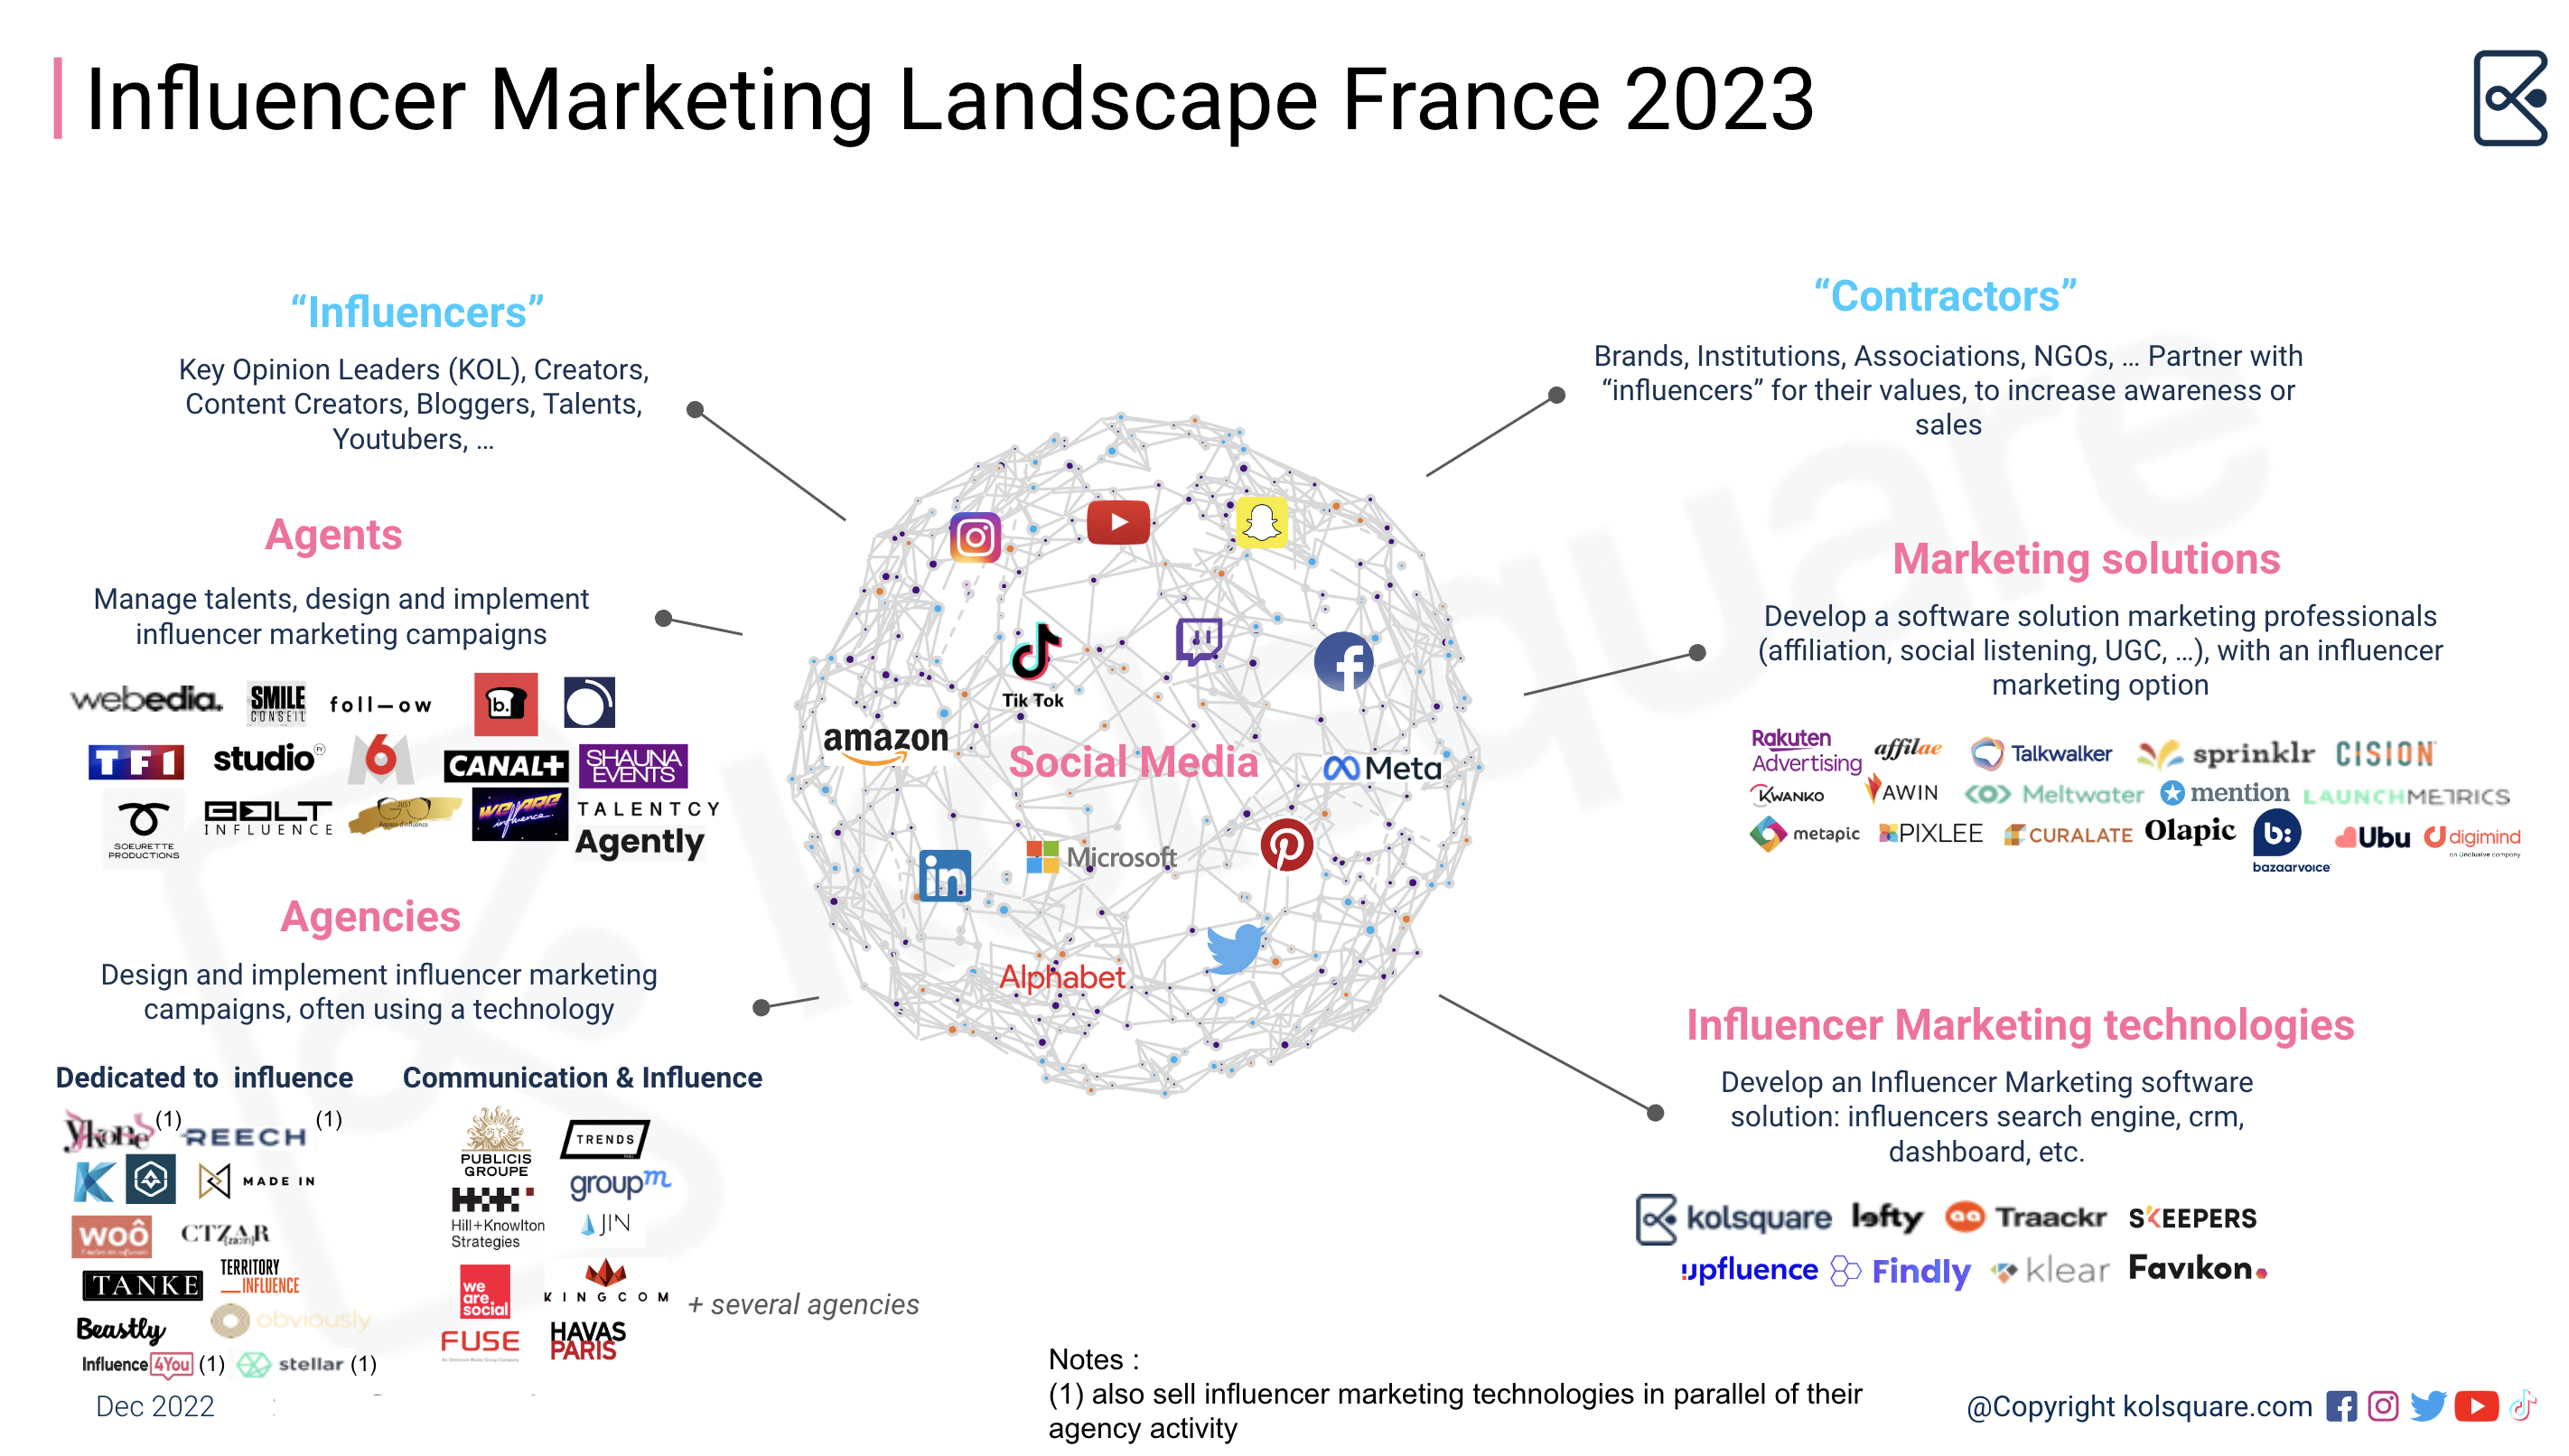 Influencer Marketing Landscape France 2023